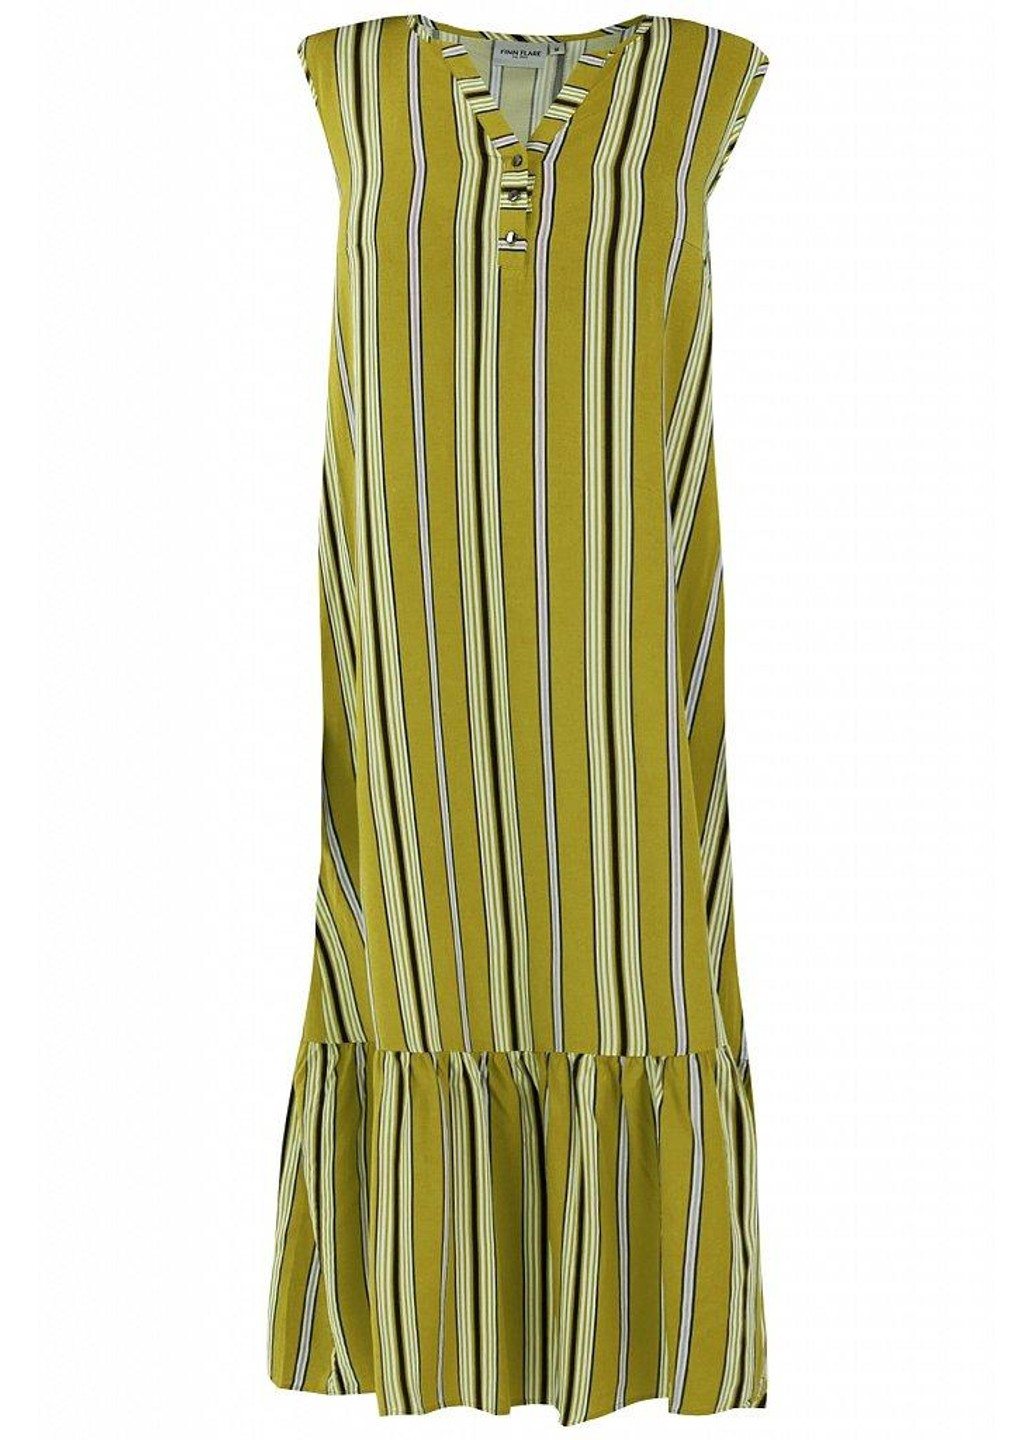 Салатова повсякденний сукня s20-32093-517 з баскою Finn Flare в смужку